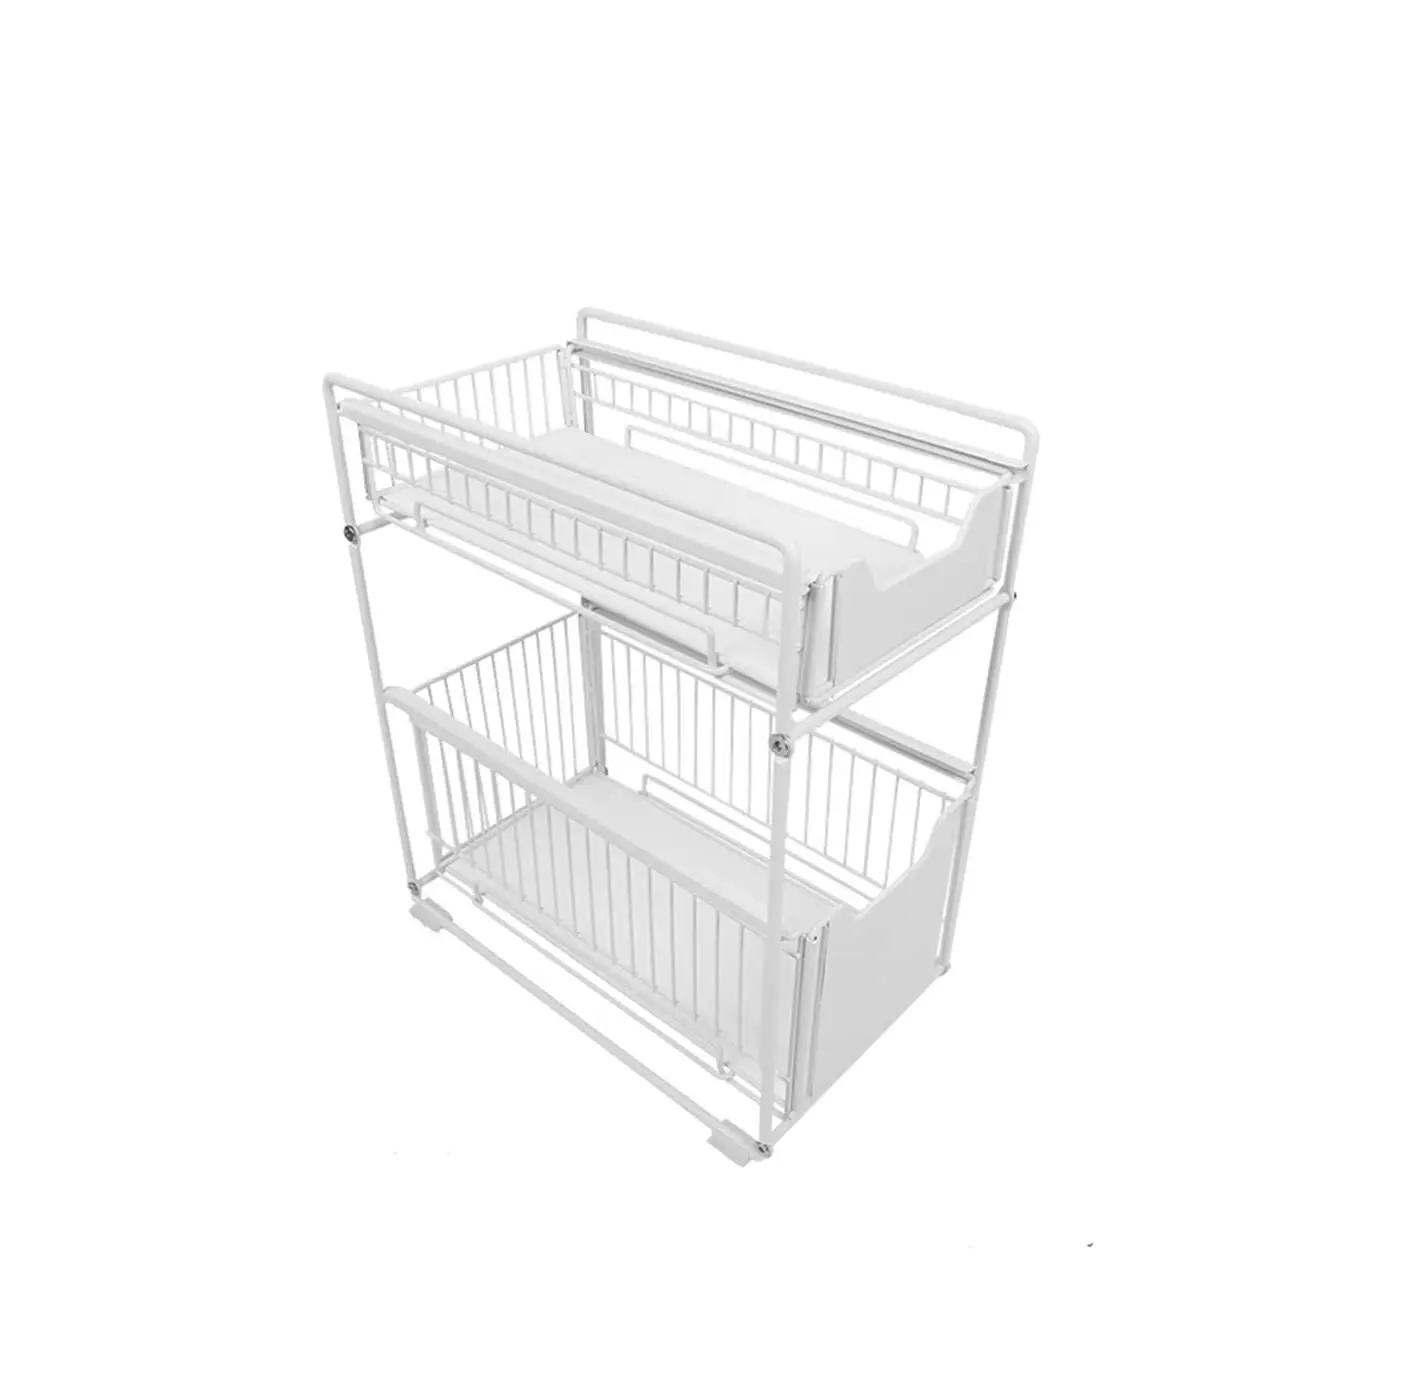 Stainless Steel 2 Tier Sliding Cabinet Basket Kitchenware Utensils Organizer Kitchen Drawer White